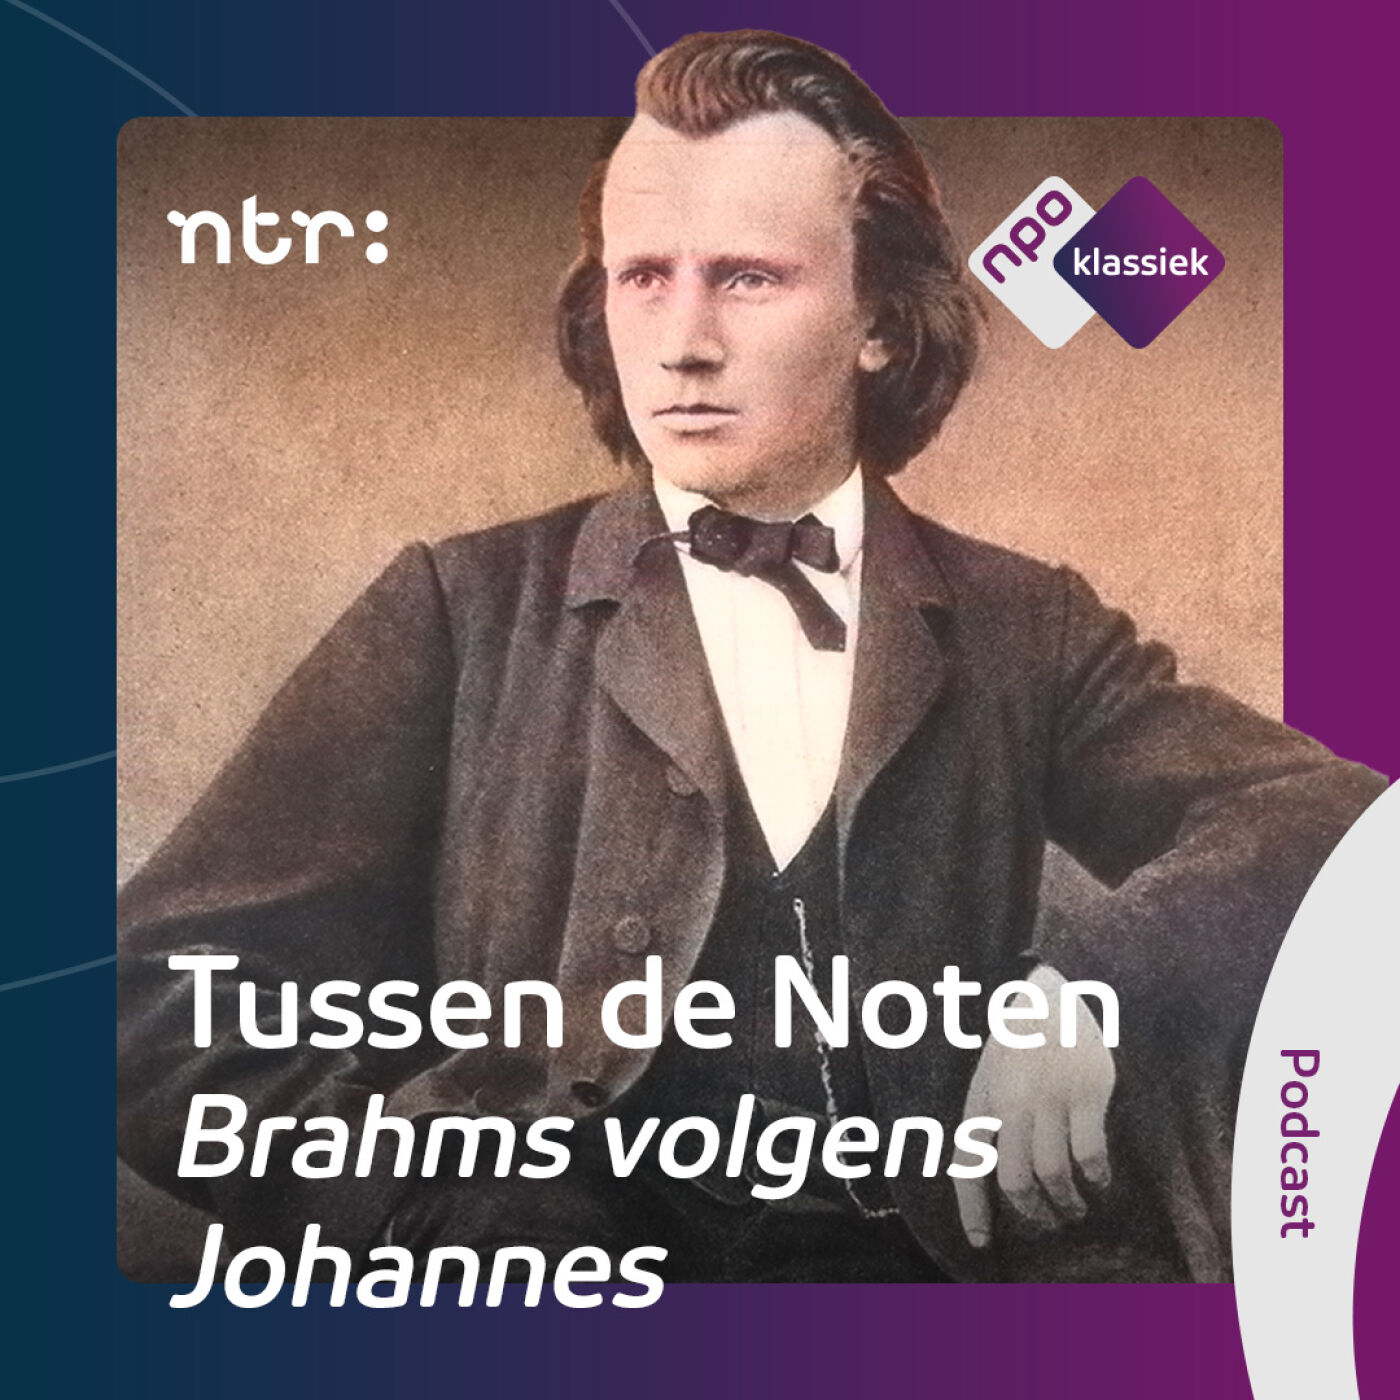 #1 - Brahms volgens Johannes - Deel 1